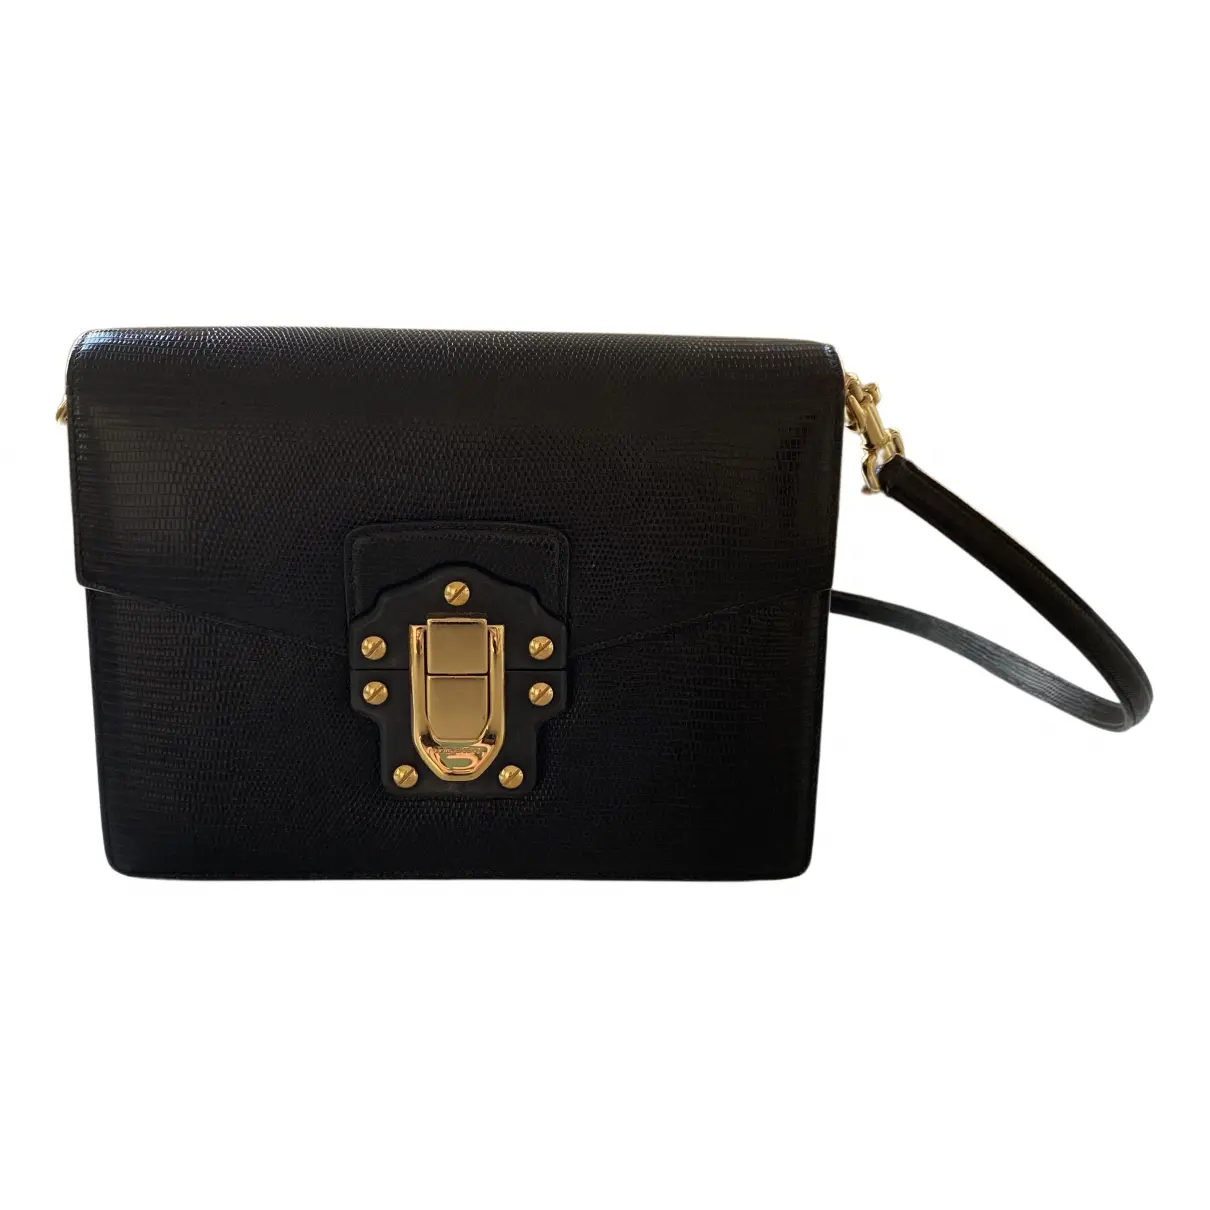 Lucia lizard handbag Dolce & Gabbana